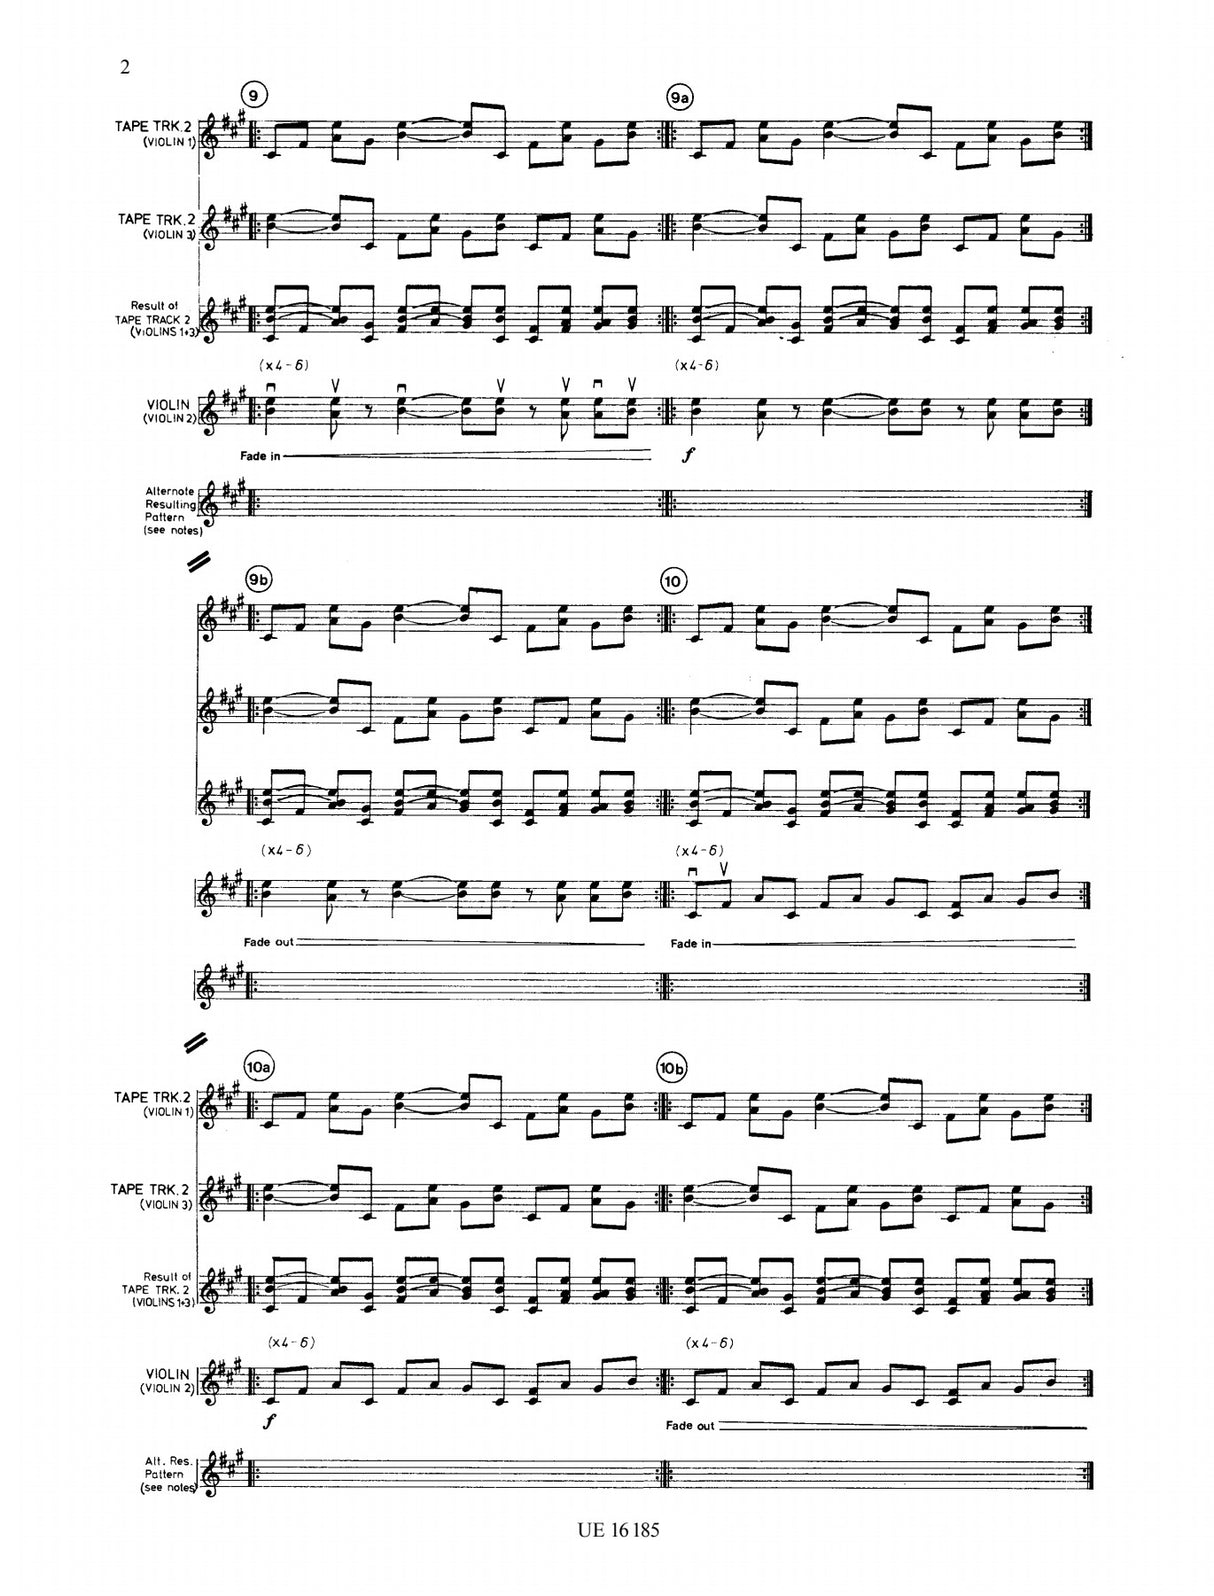 Reich: Violin Phase